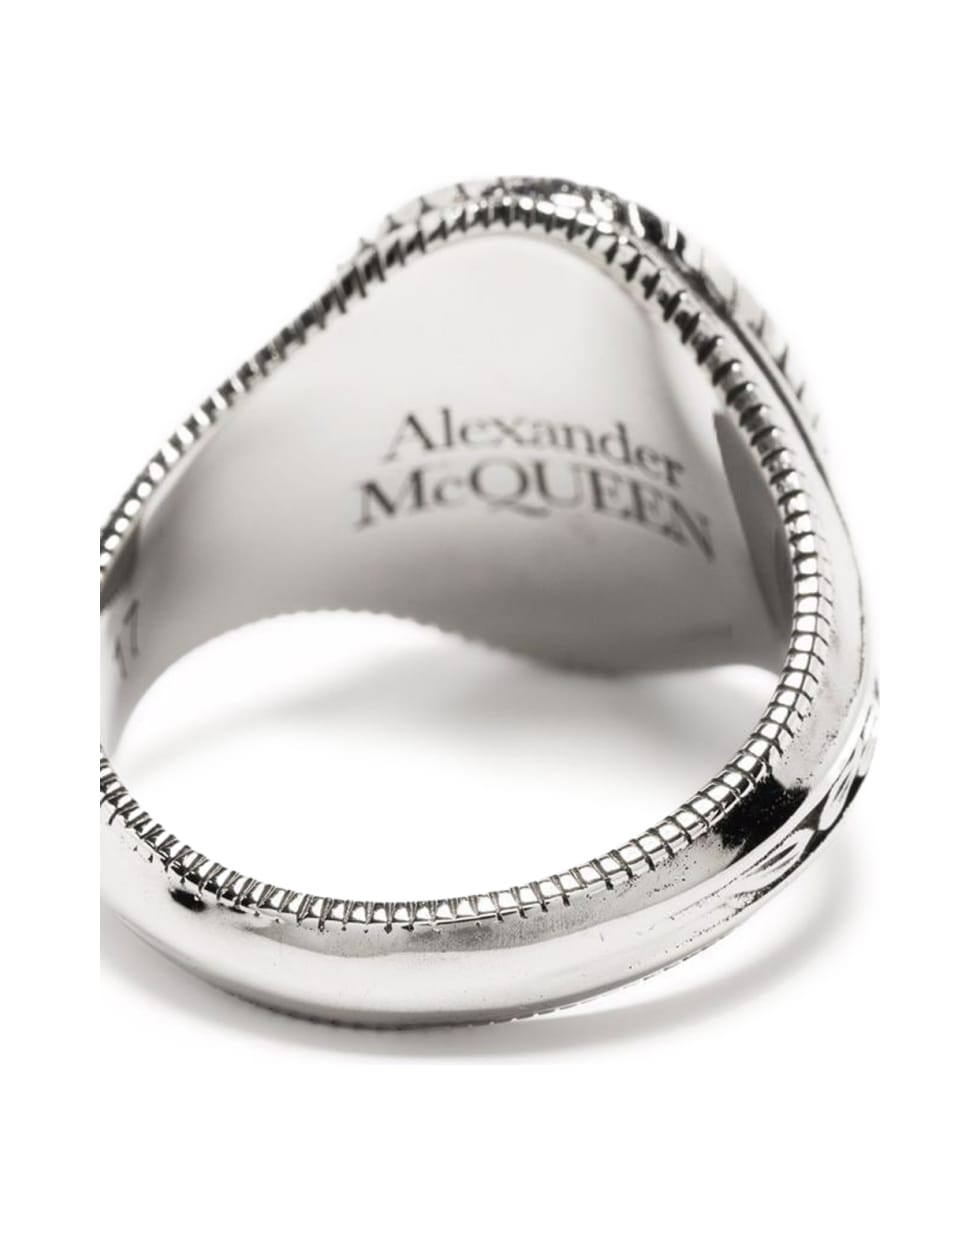 Alexander McQueen Medallion Skull Ring - Silver